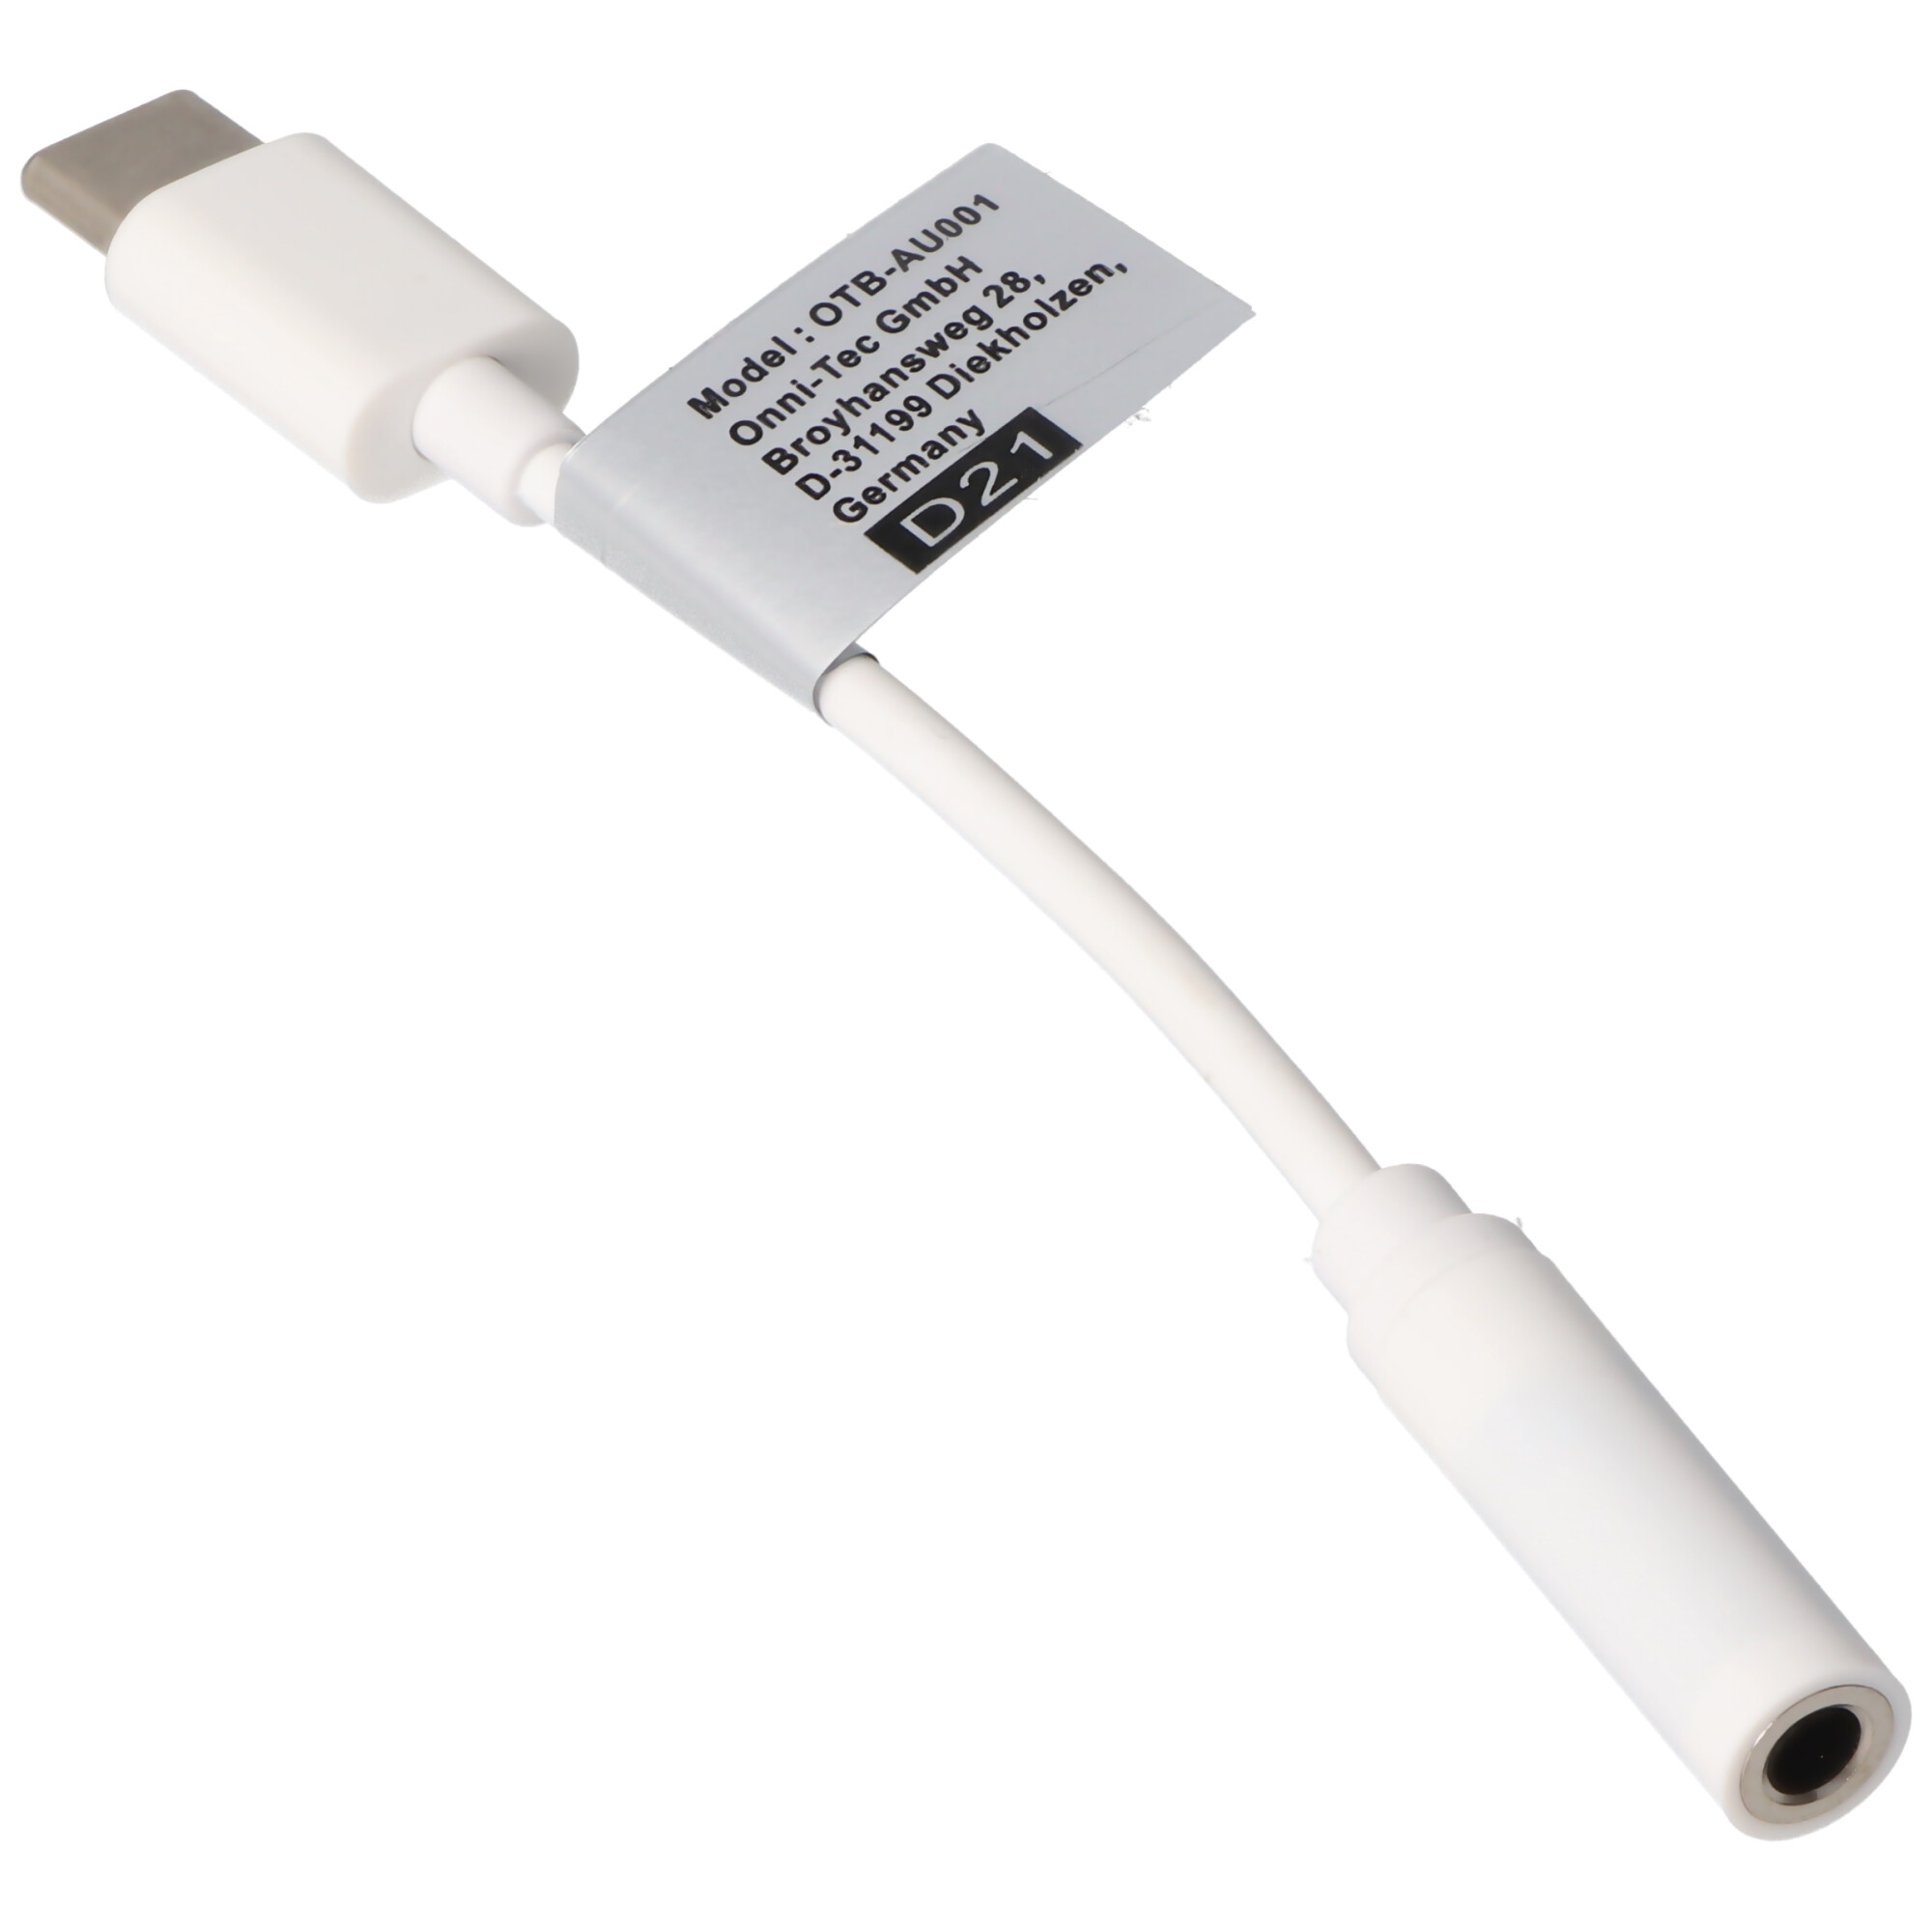 AUDIO- UND HEADSETADAPTER von USB TYPE C USB-C auf ein 3,5MM STEREO KABEL